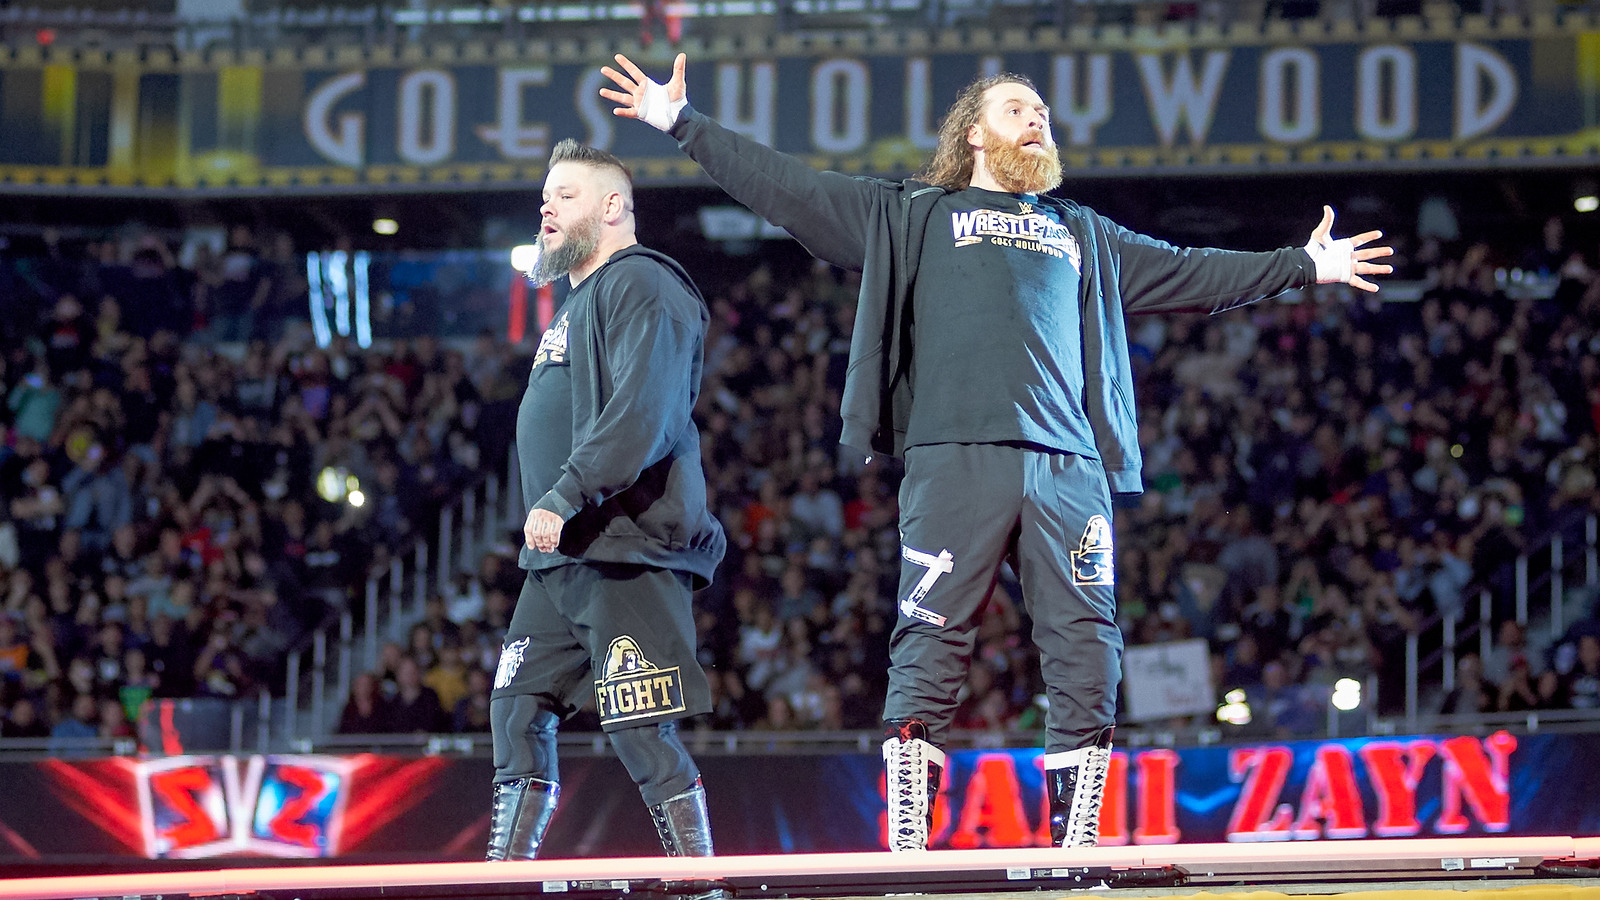 El evento principal de WWE Raw provocó una discusión entre bastidores entre el talento